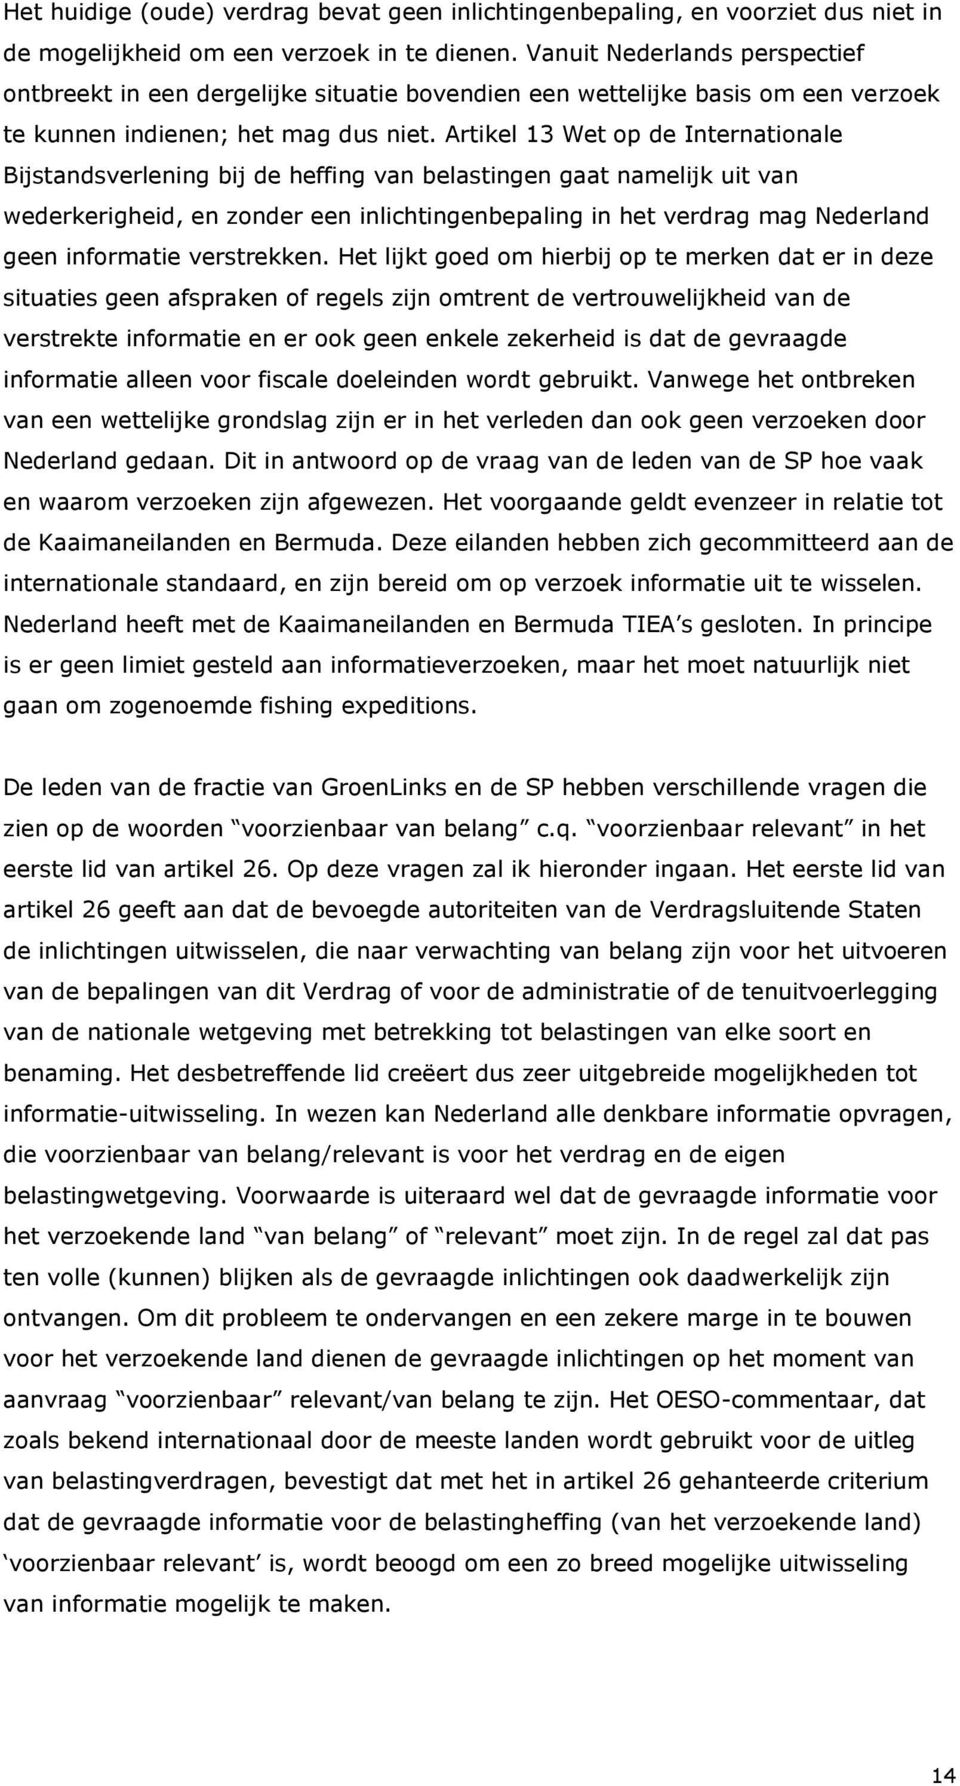 Artikel 13 Wet op de Internationale Bijstandsverlening bij de heffing van belastingen gaat namelijk uit van wederkerigheid, en zonder een inlichtingenbepaling in het verdrag mag Nederland geen